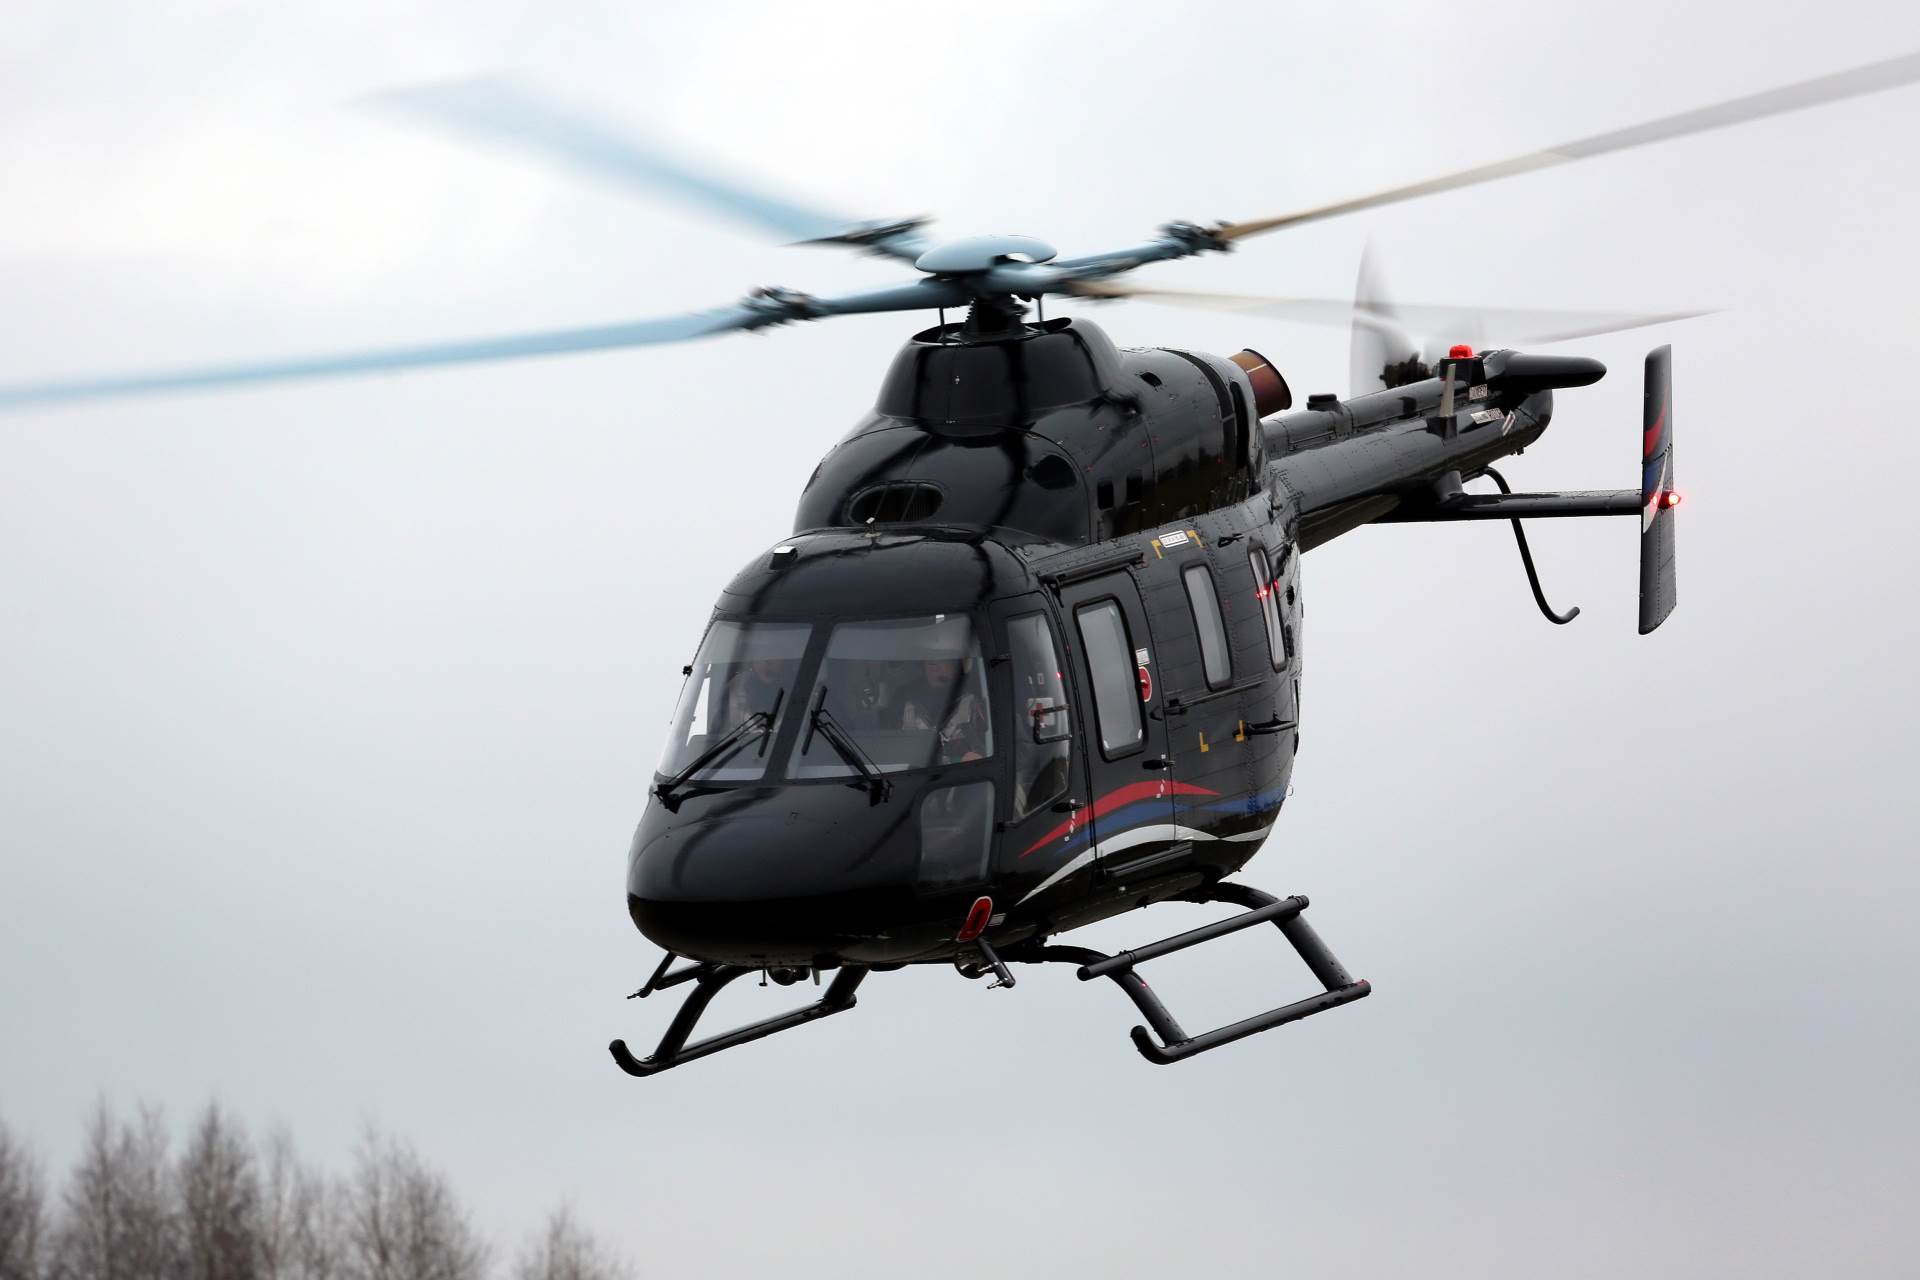  Helikopter traga za nestalim avionom na području Kozare, magla smanjuje vidljivost (VIDEO) 